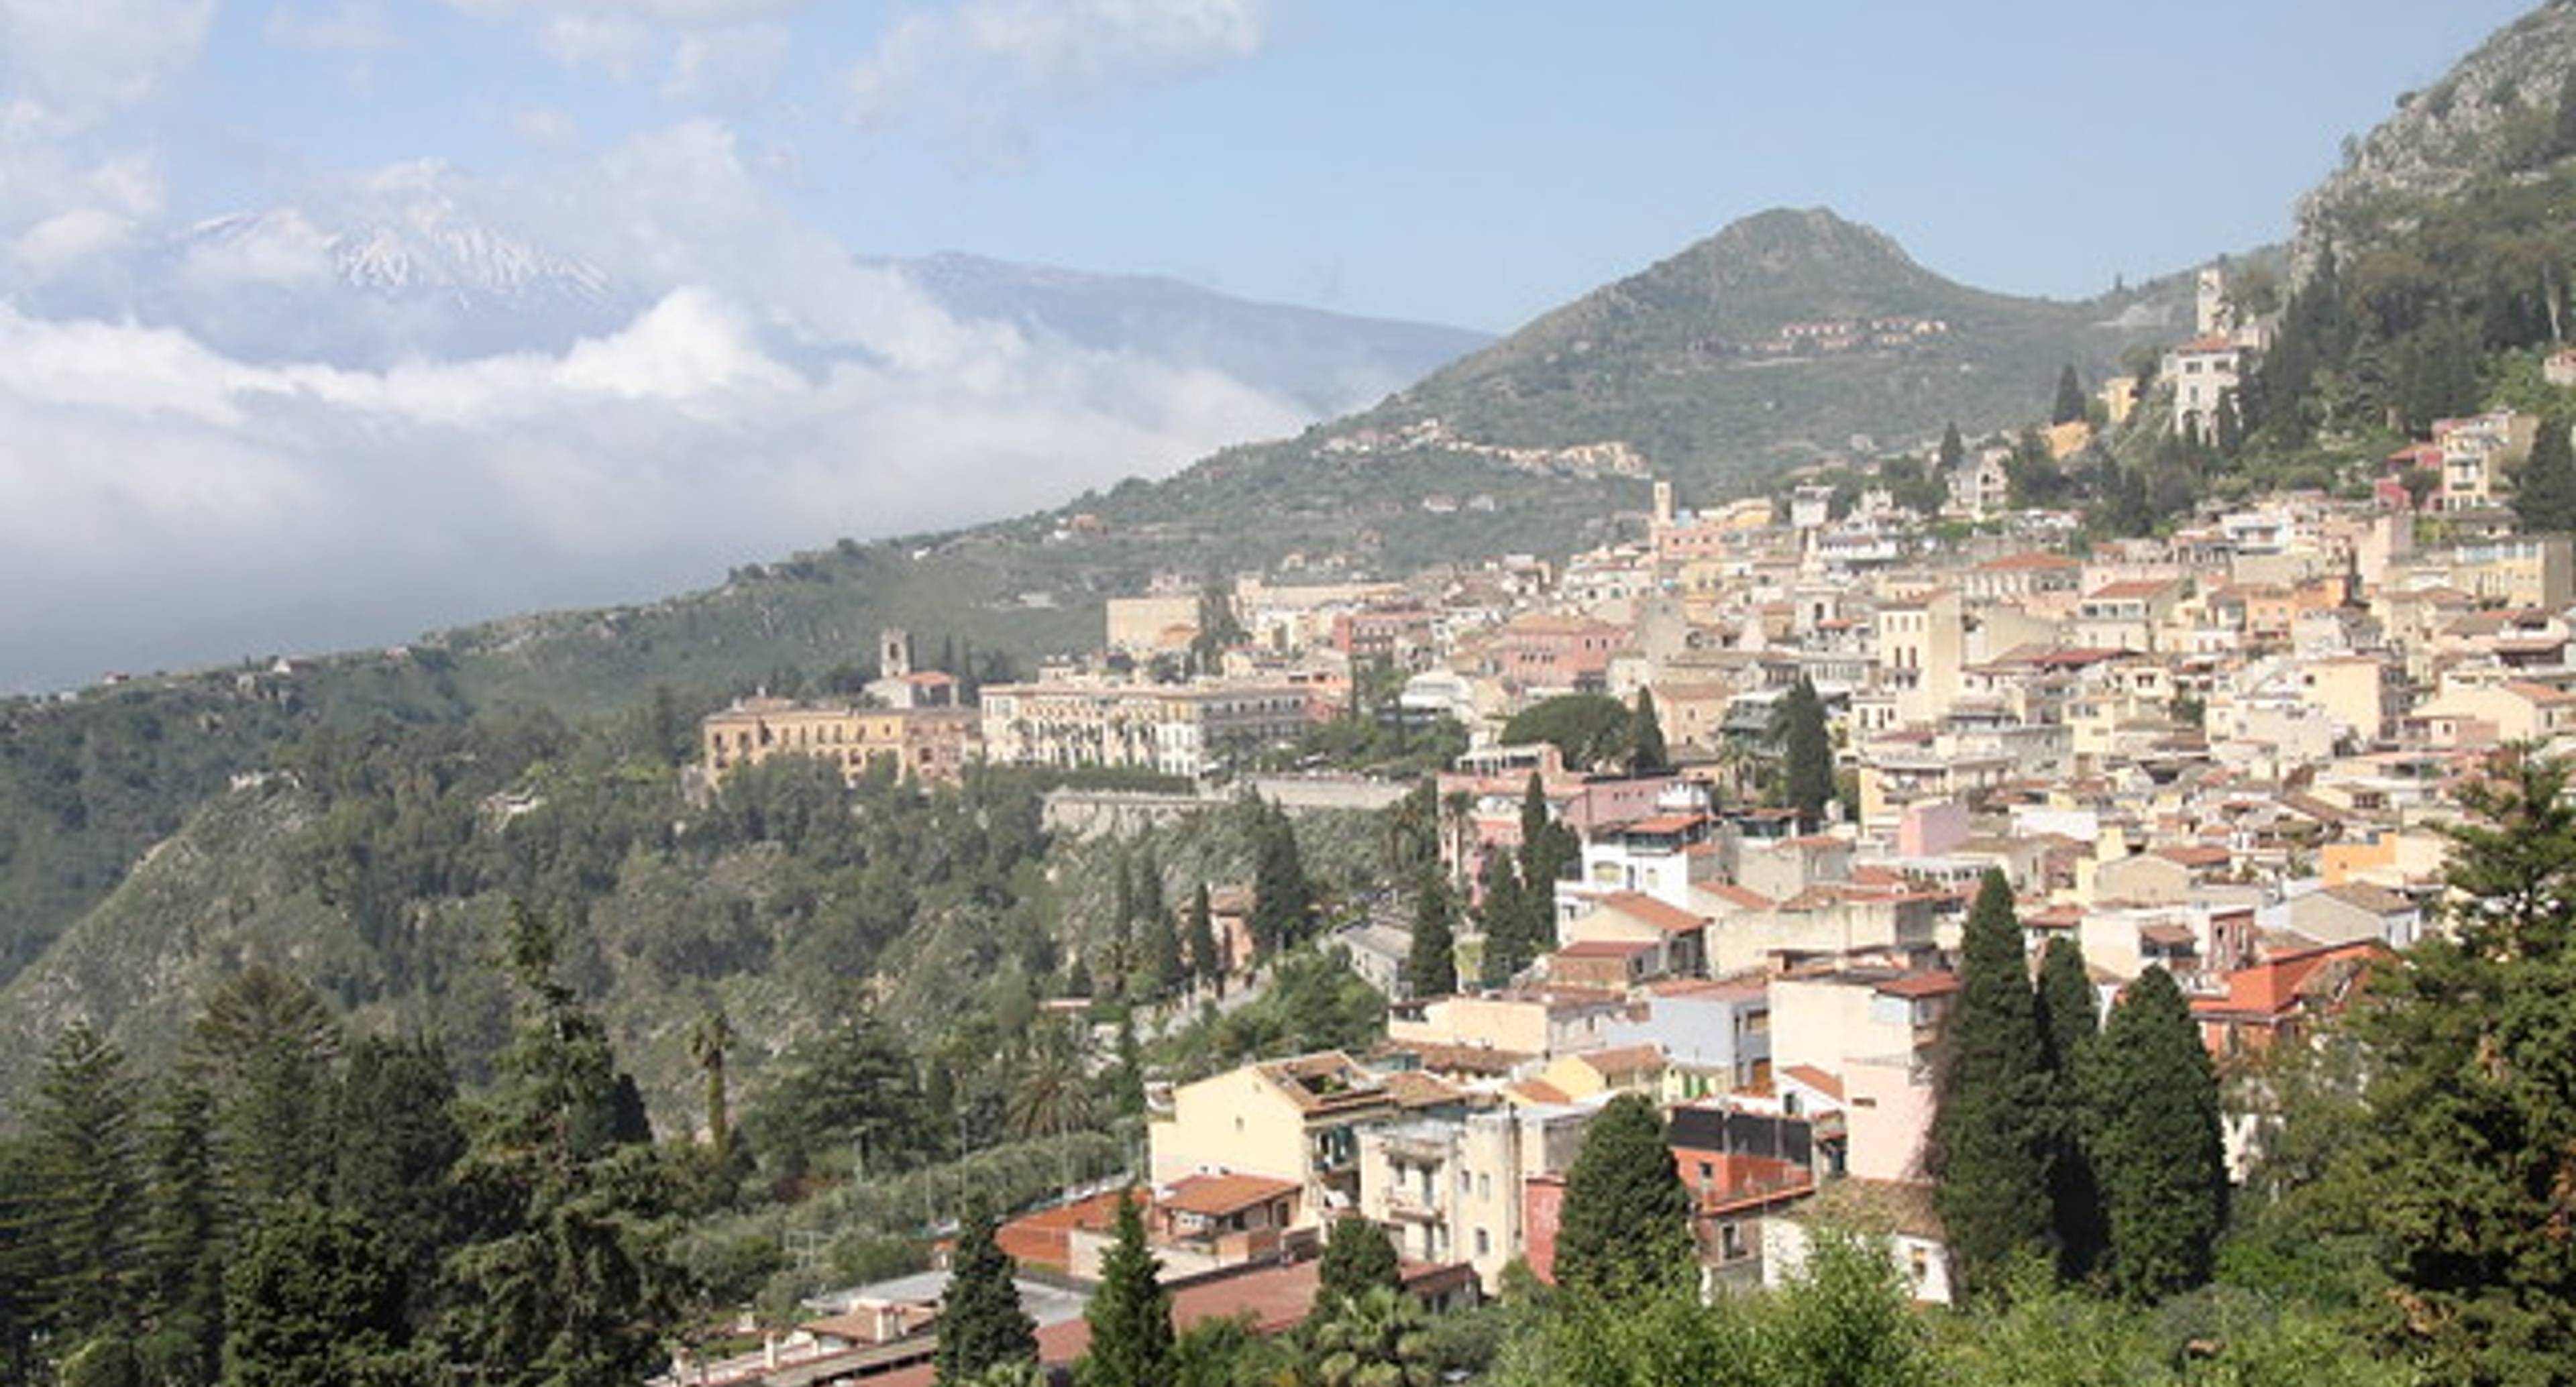 Day 6: Taormina and Castelmola